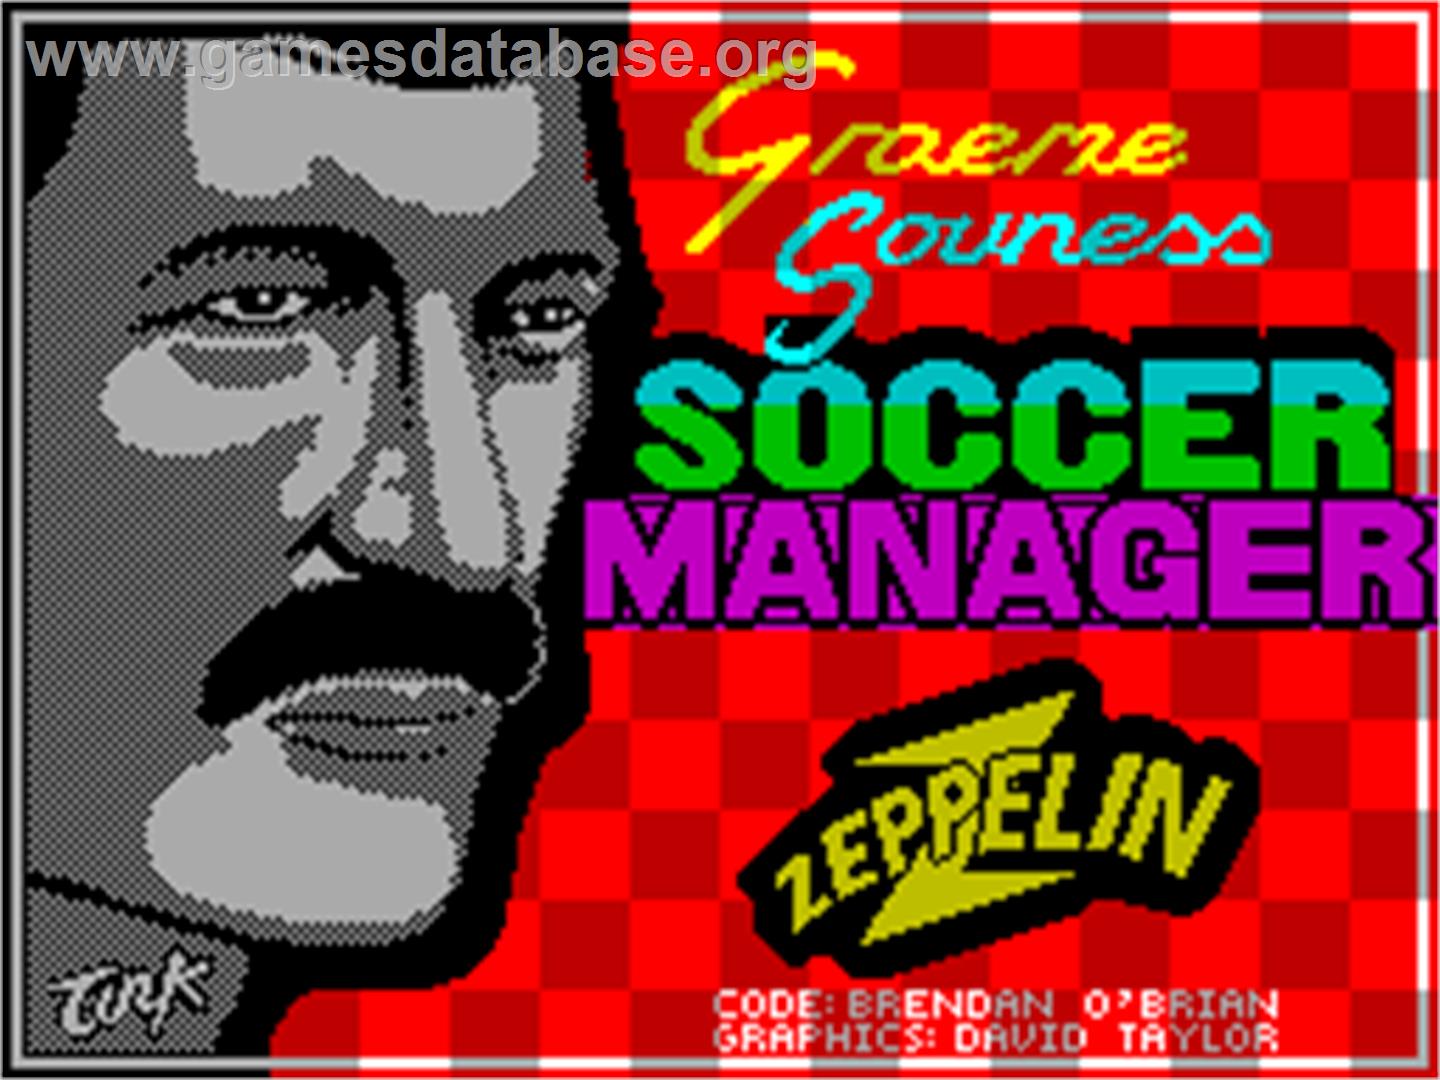 Graeme Souness Soccer Manager - Sinclair ZX Spectrum - Artwork - Title Screen